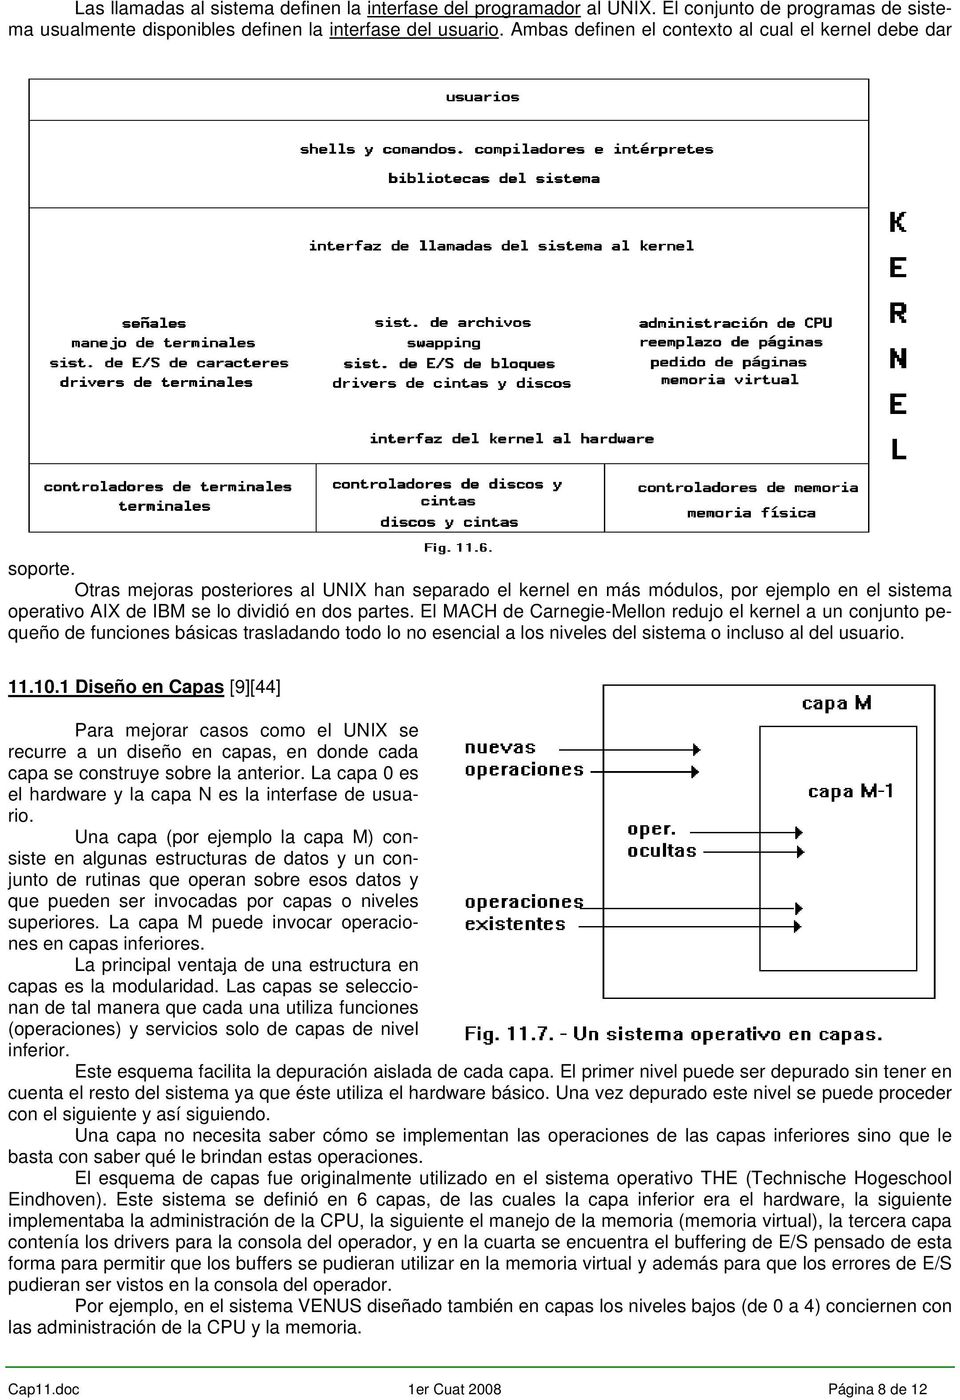 Otras mejoras posteriores al UNIX han separado el kernel en más módulos, por ejemplo en el sistema operativo AIX de IBM se lo dividió en dos partes.